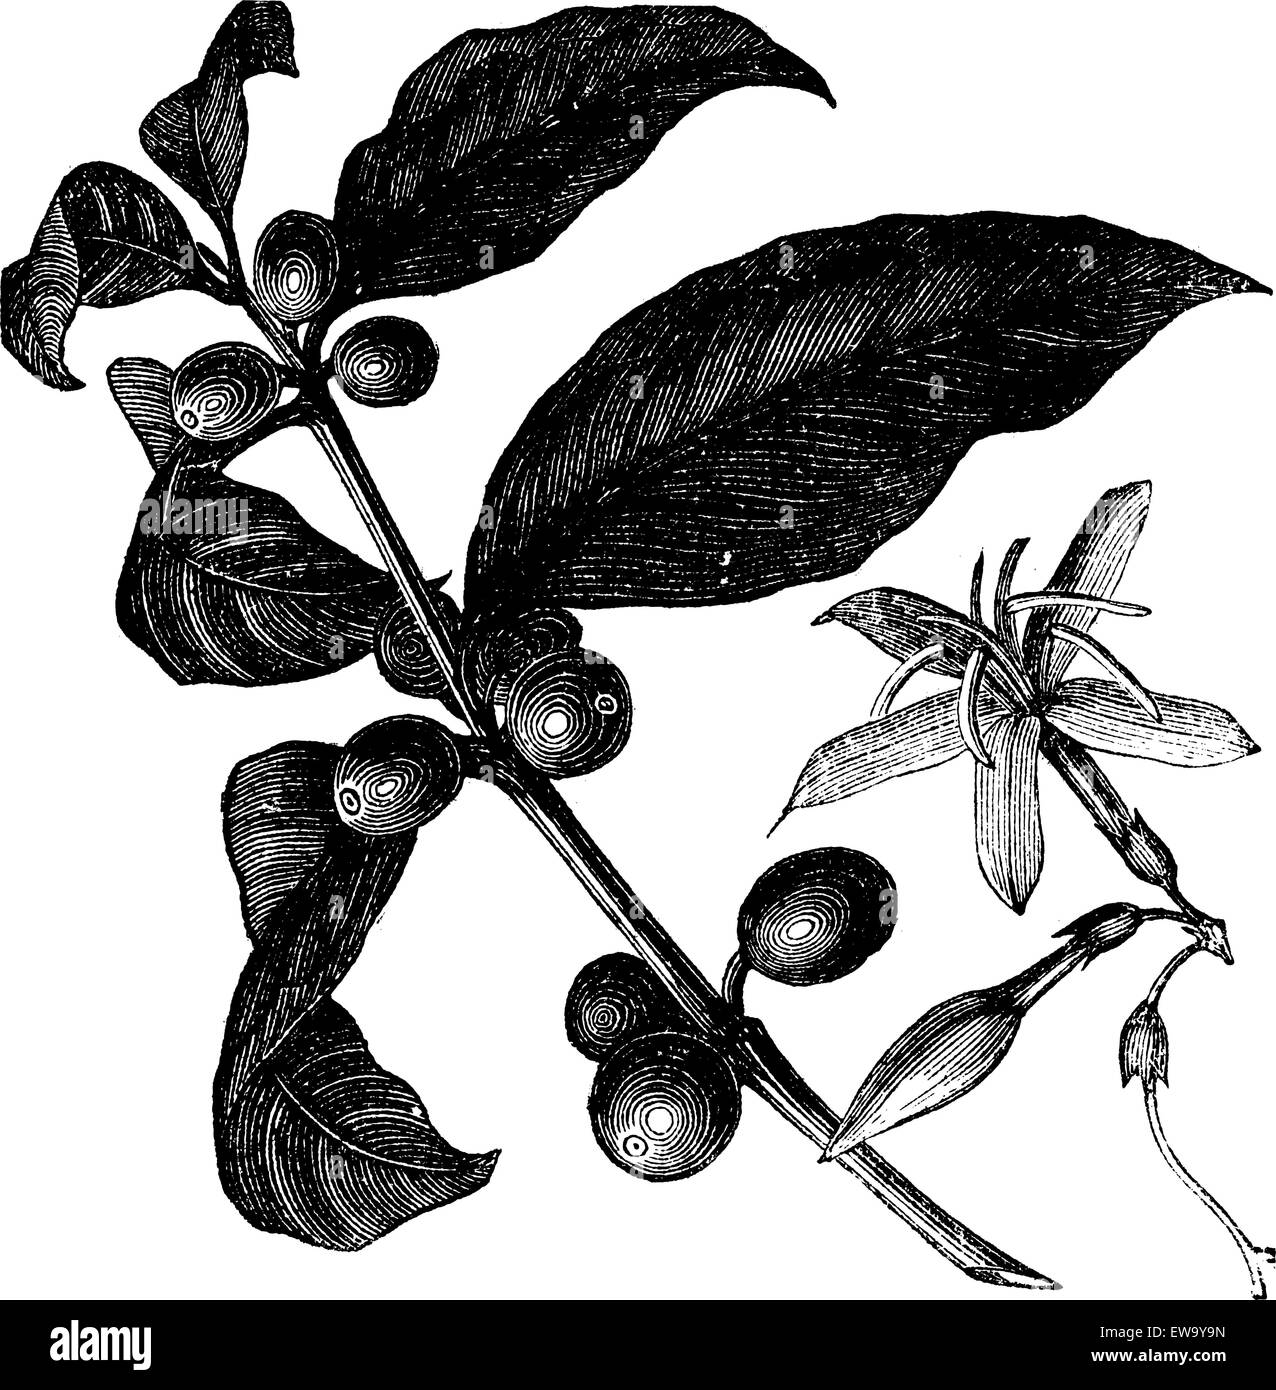 Coffea, oder Kaffee Strauch und Früchte, vintage Gravur. Vintage eingravierten Abbildung: Kaffee, Samen, Früchte und Blüten vor einem weißen Hintergrund isoliert. Stock Vektor